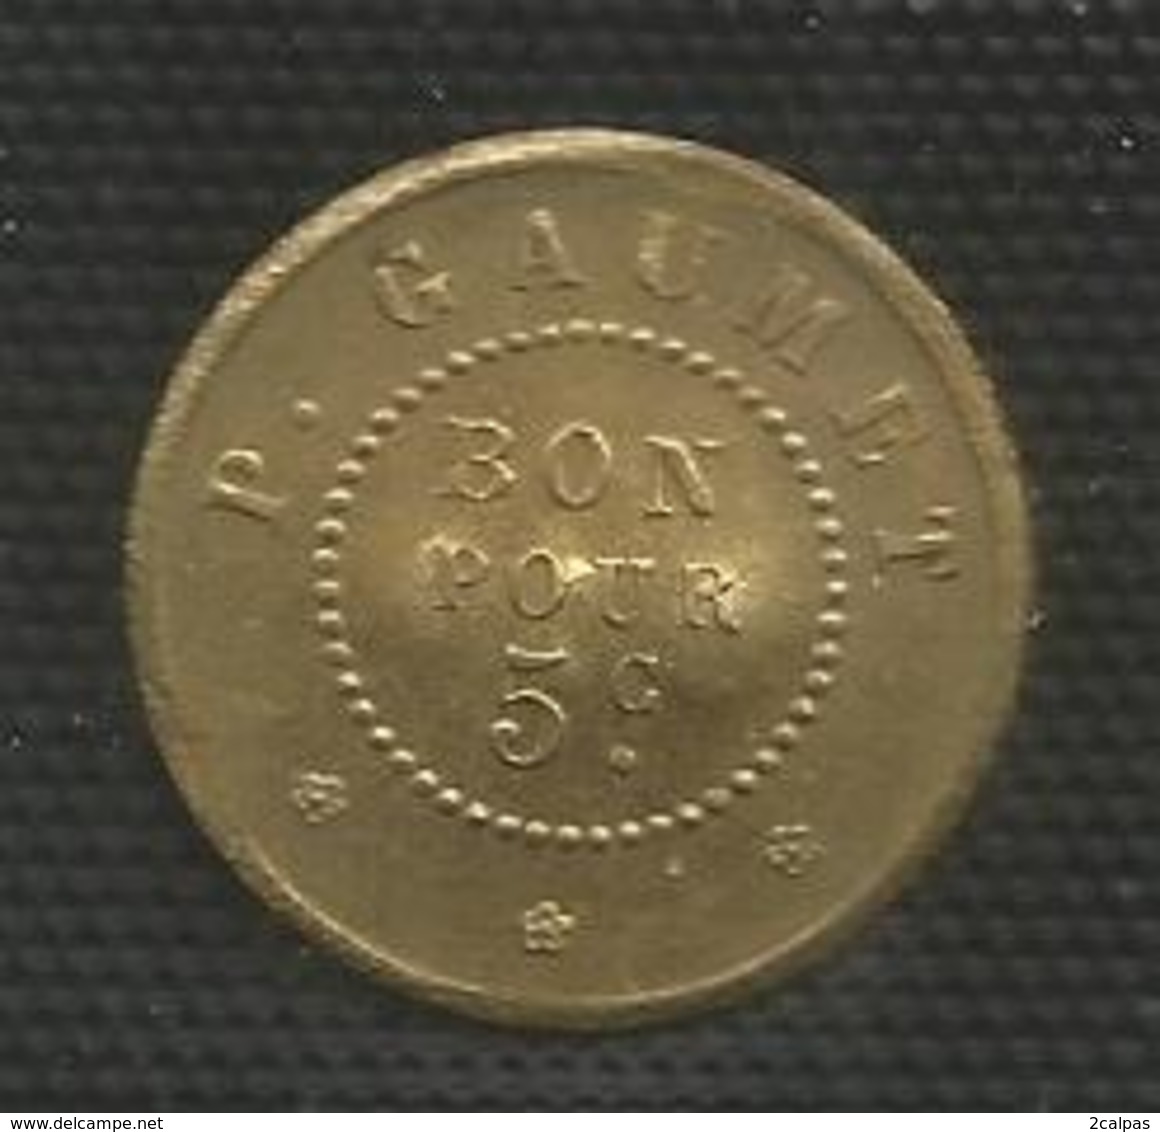 Jeton Militaire - Cantine Du Fort De Stains - 5 Centimes - Monnaie De Nécessité Numérotée 910 - Monétaires / De Nécessité